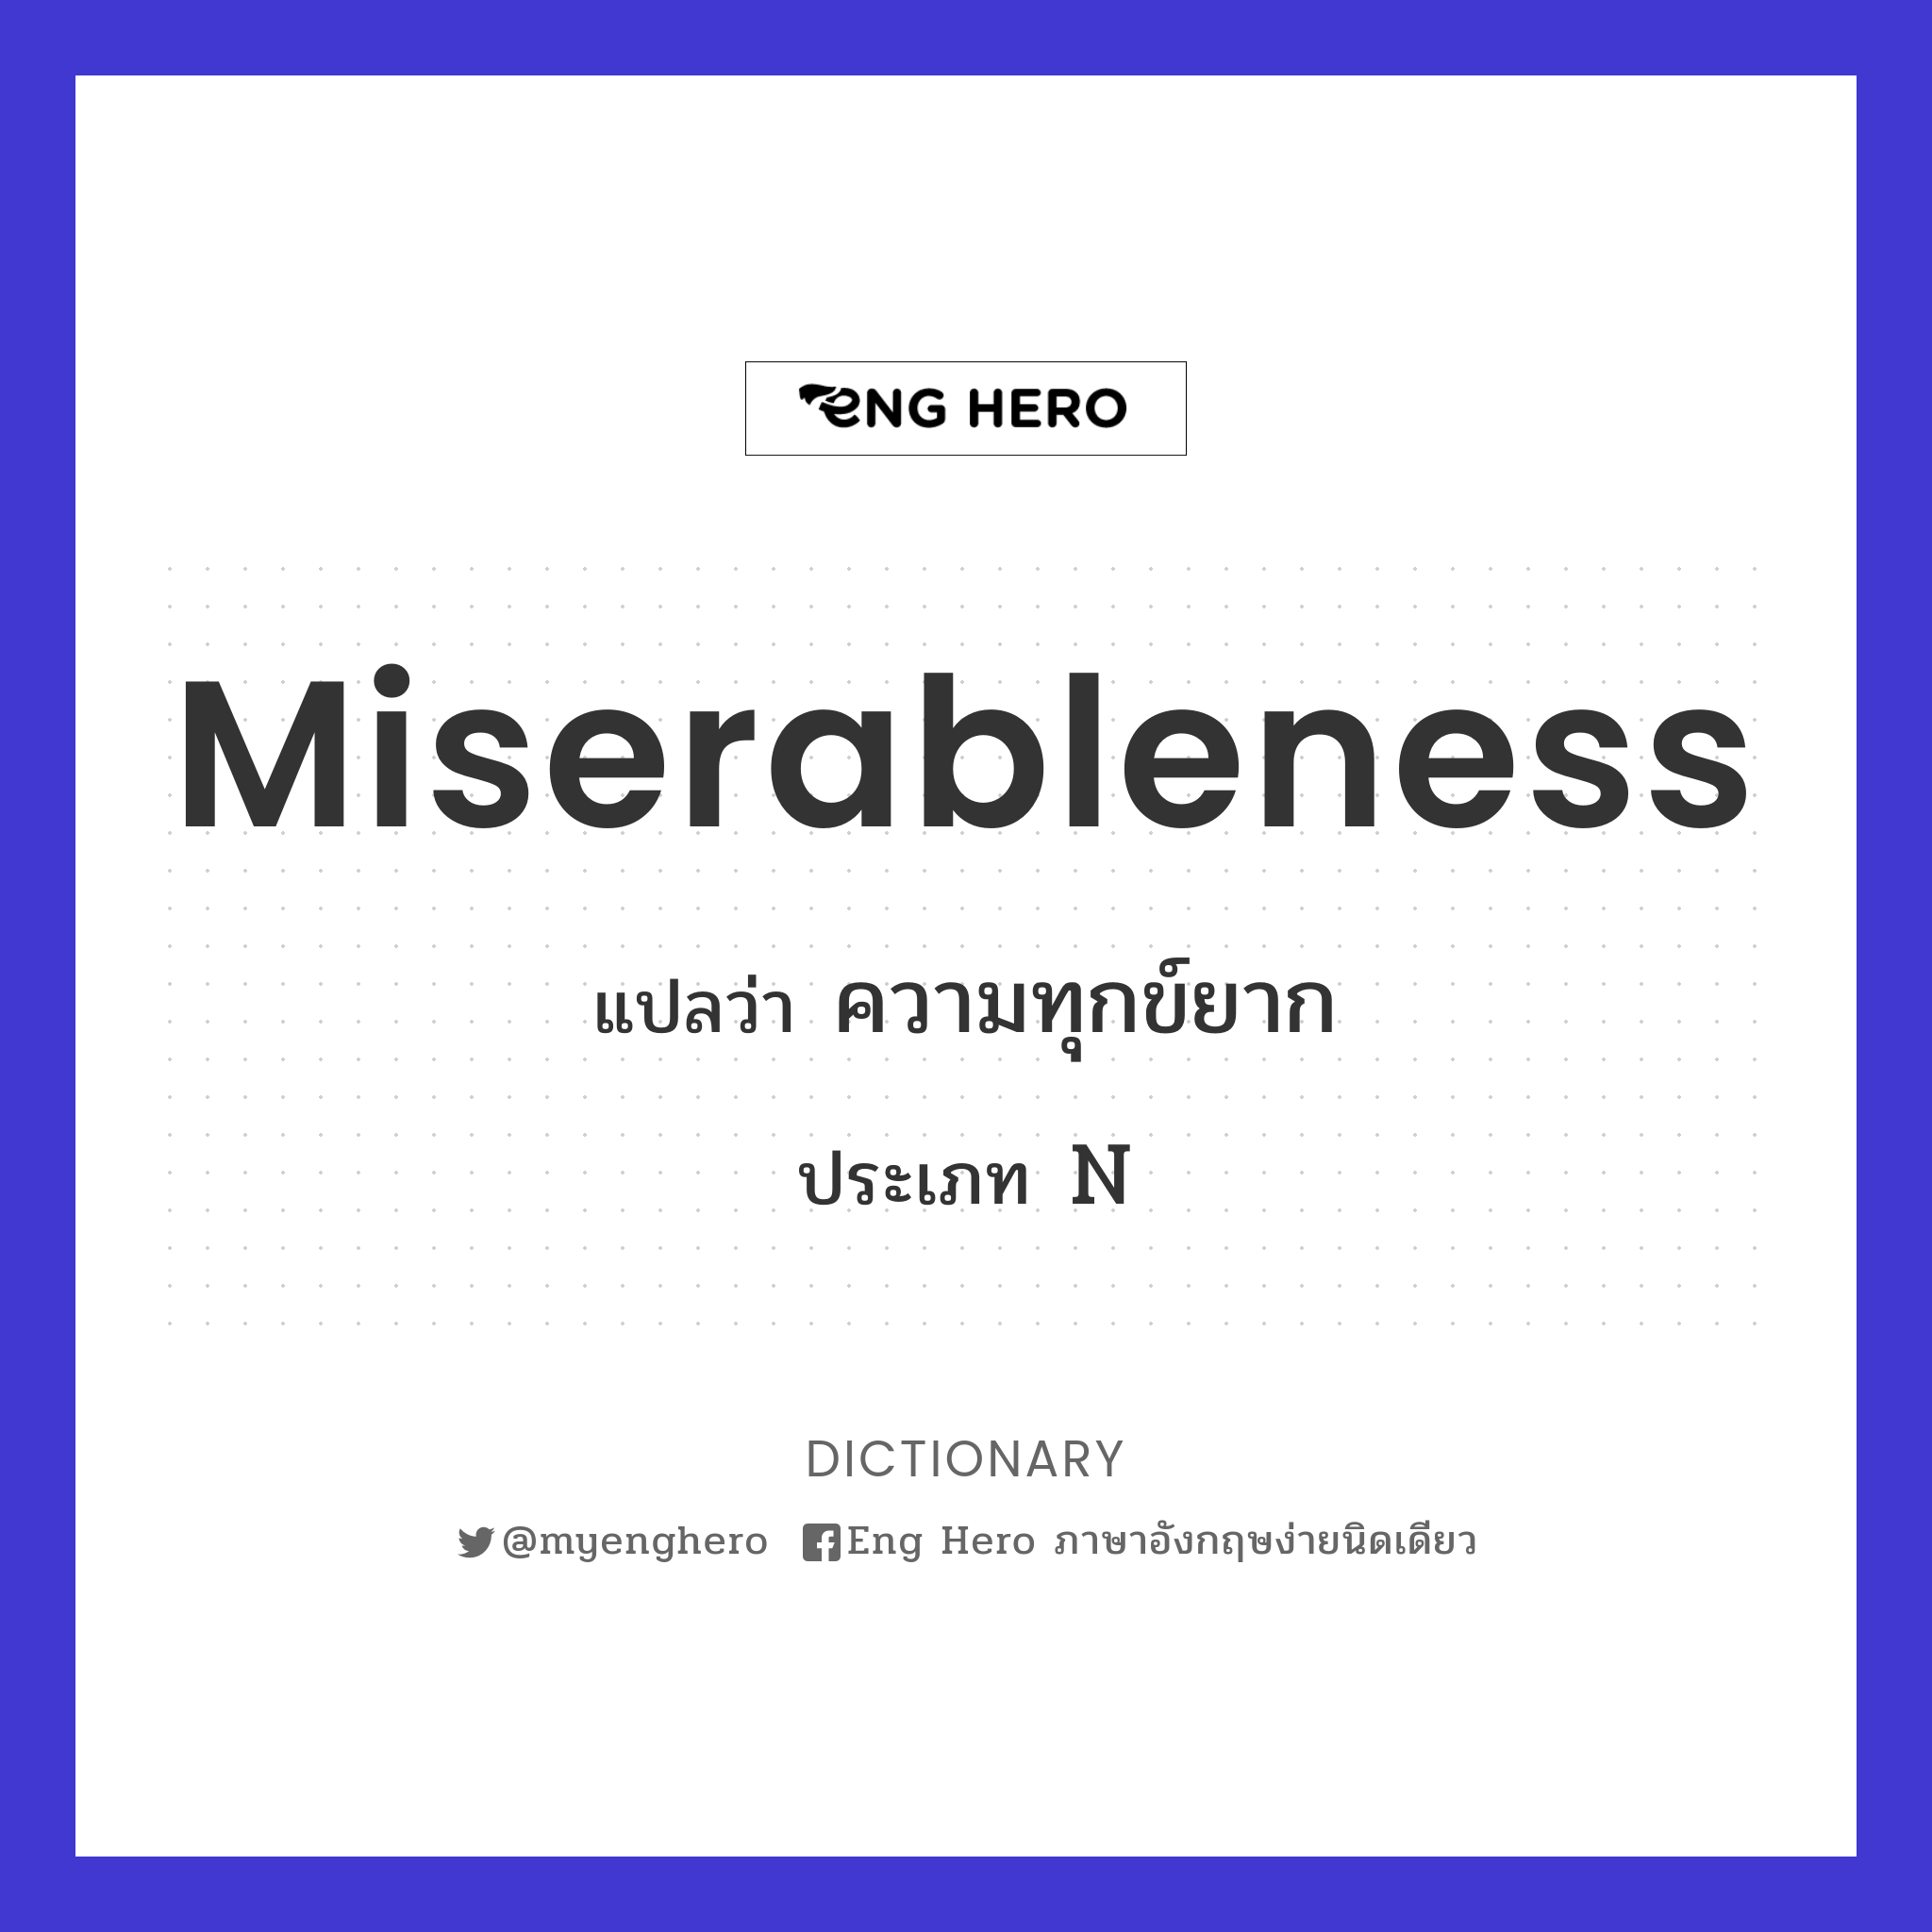 miserableness